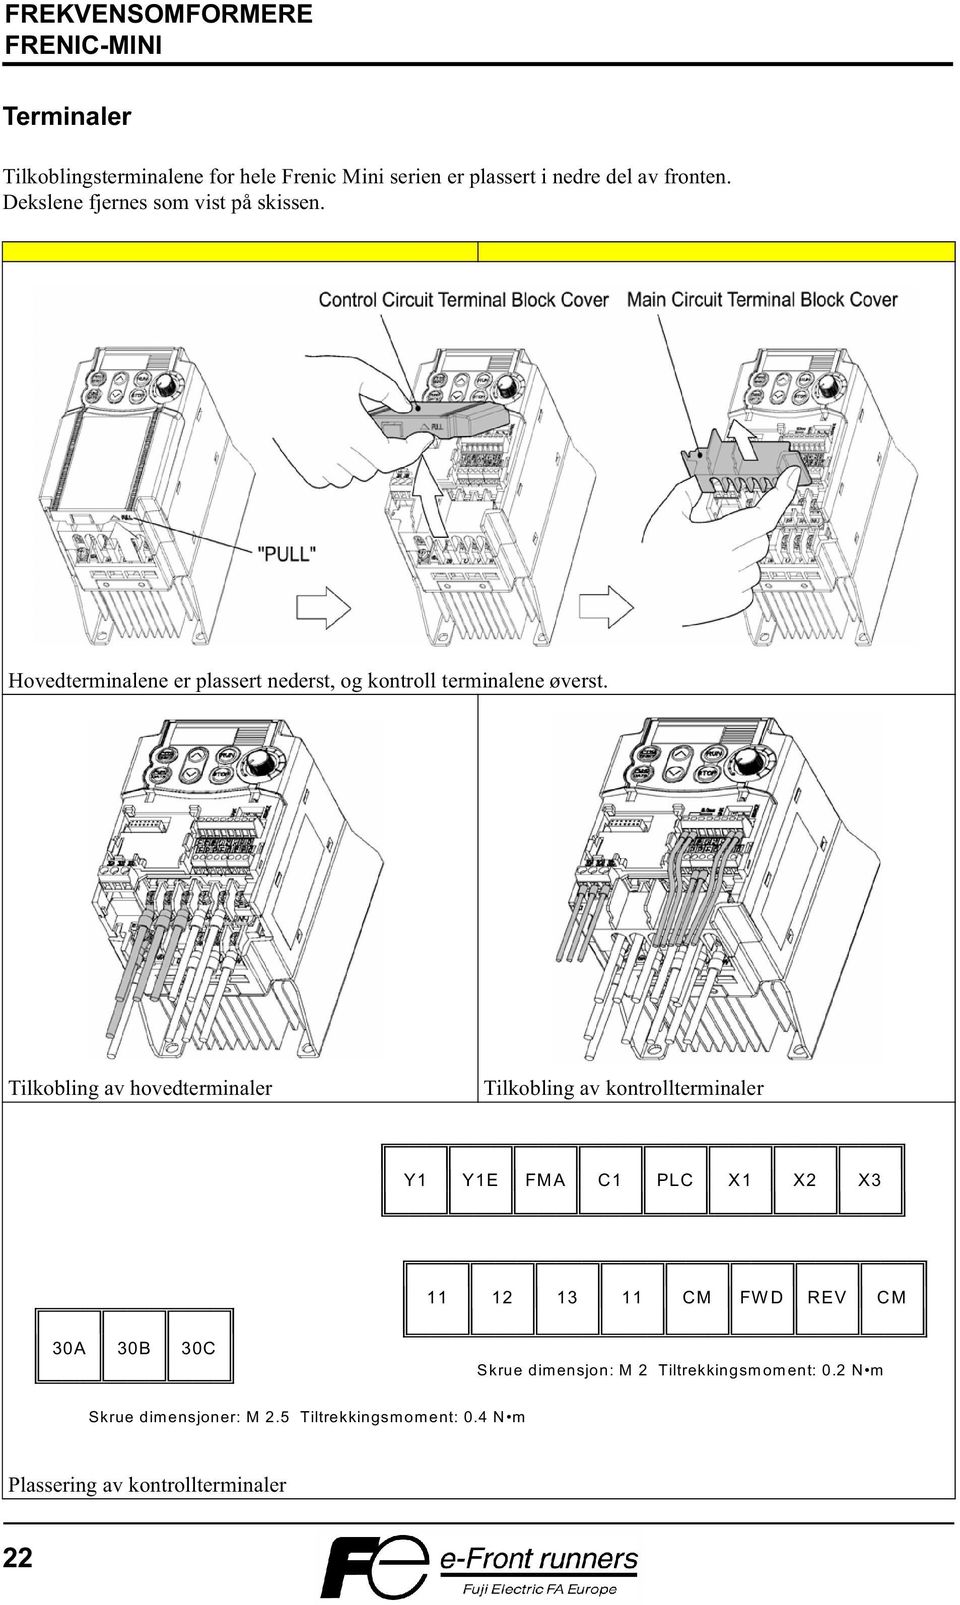 Tilkobling av hovedterminaler Tilkobling av kontrollterminaler Y1 Y1E FMA C1 PLC X1 X2 X3 11 12 13 11 CM FW D REV CM